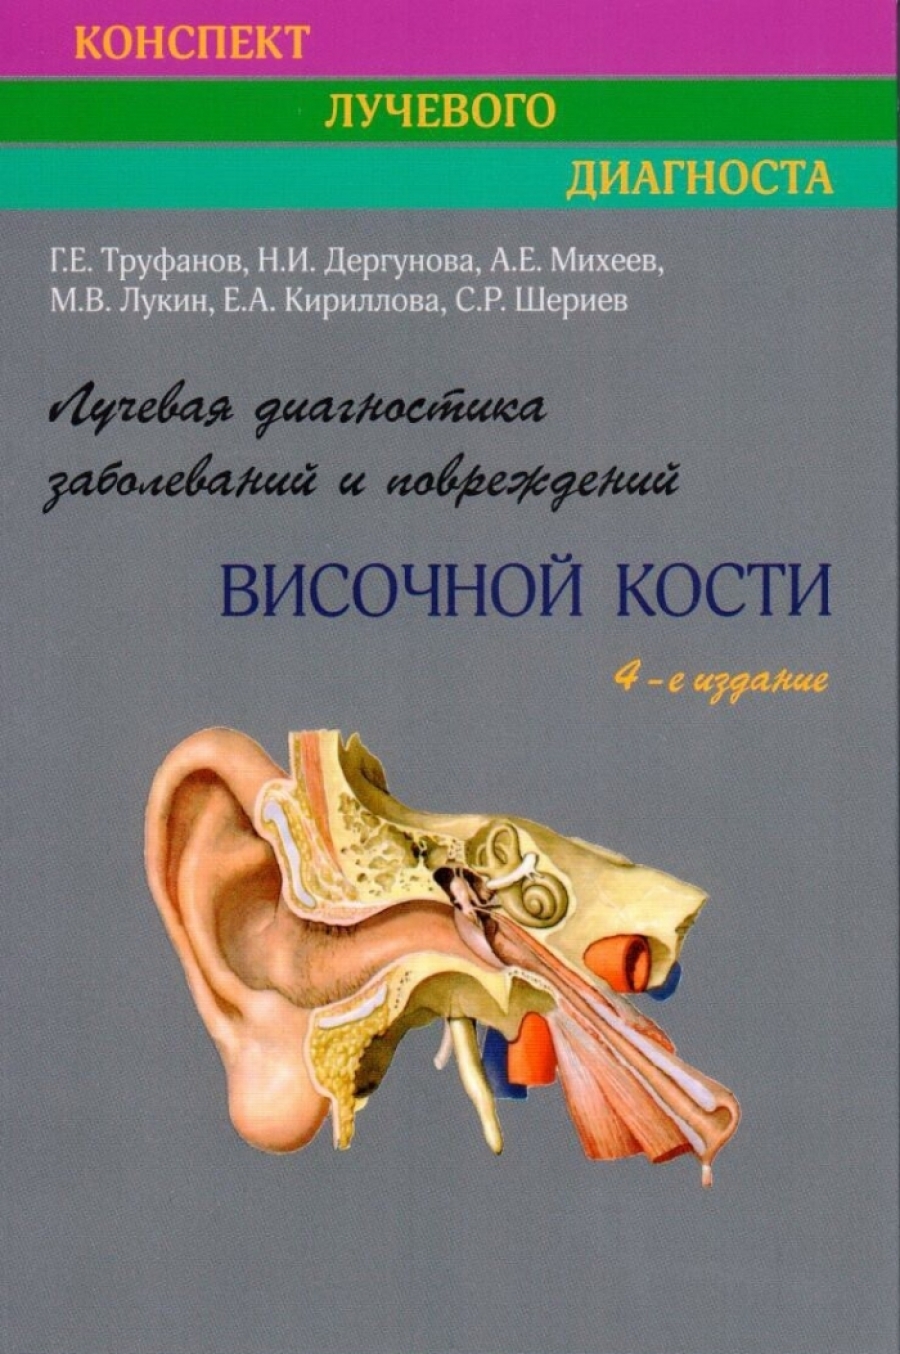 Труфанов Г.Е. Лучевая диагностика заболеваний и повреждений височной кости. 4-изд., переработанное и дополненное 